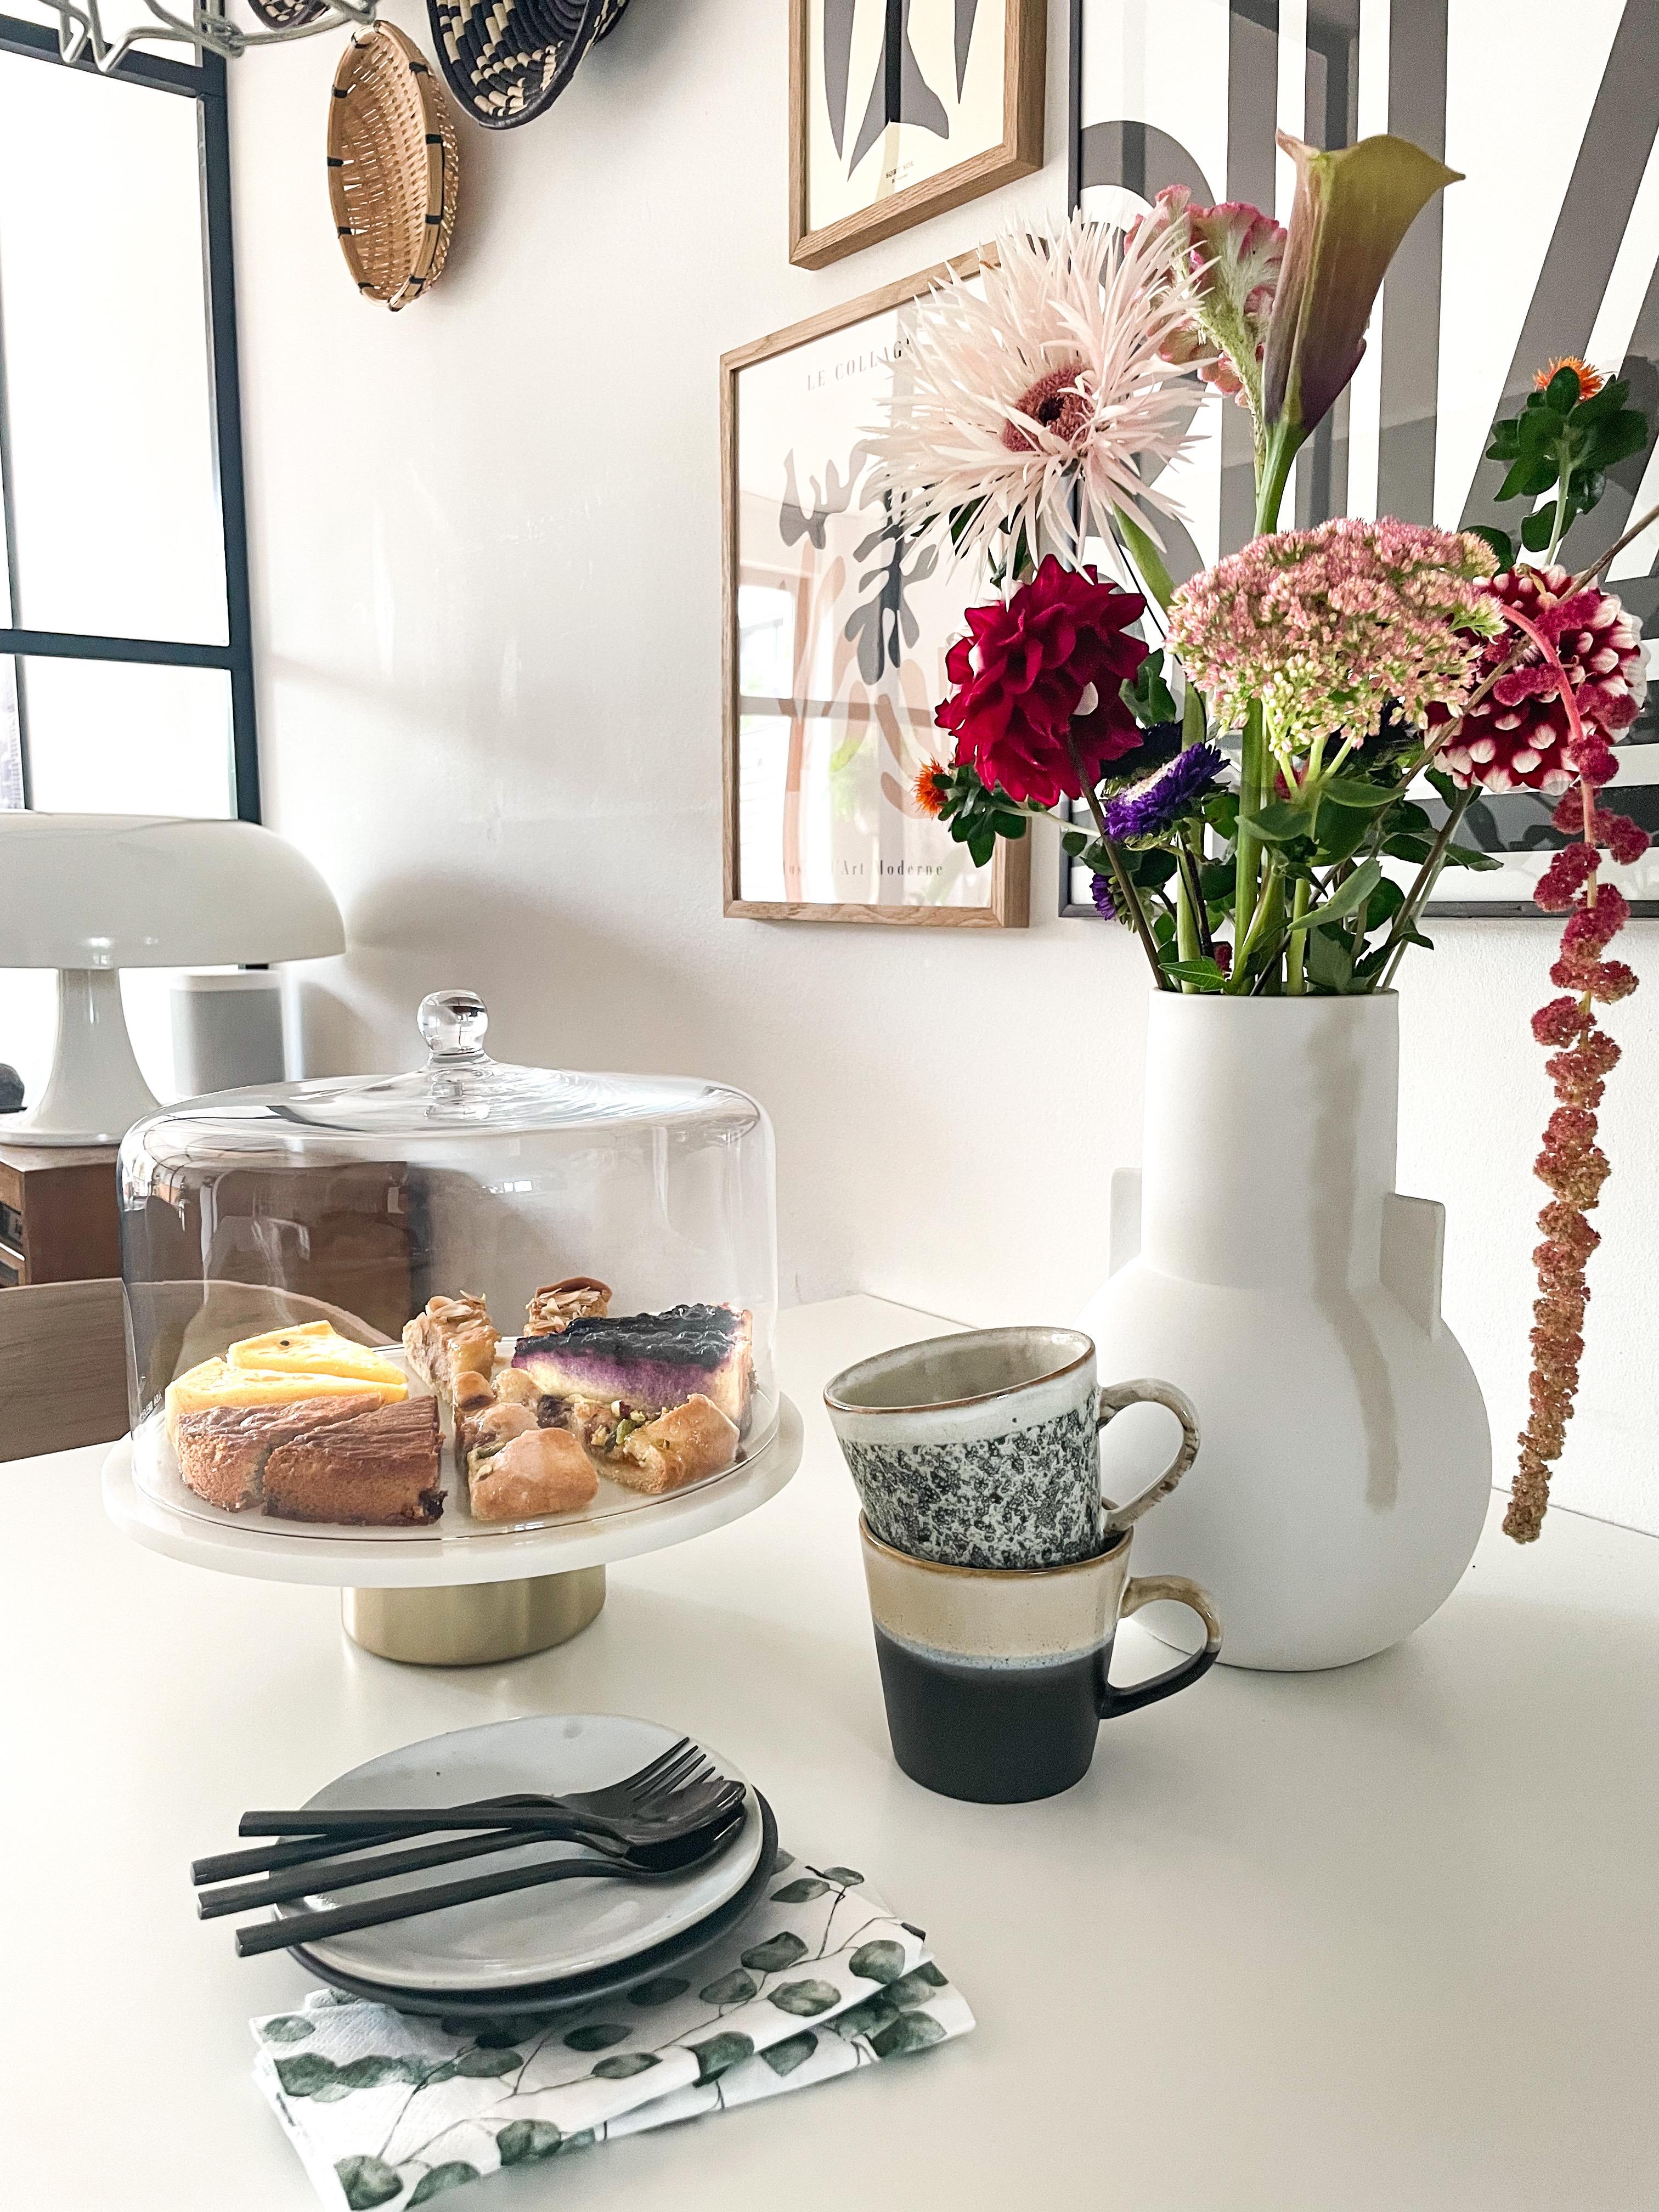 Was soll ich sagen ... Genuss am Nachmittag!

#Kaffee #Blumen #Blumenvase #Kuchen